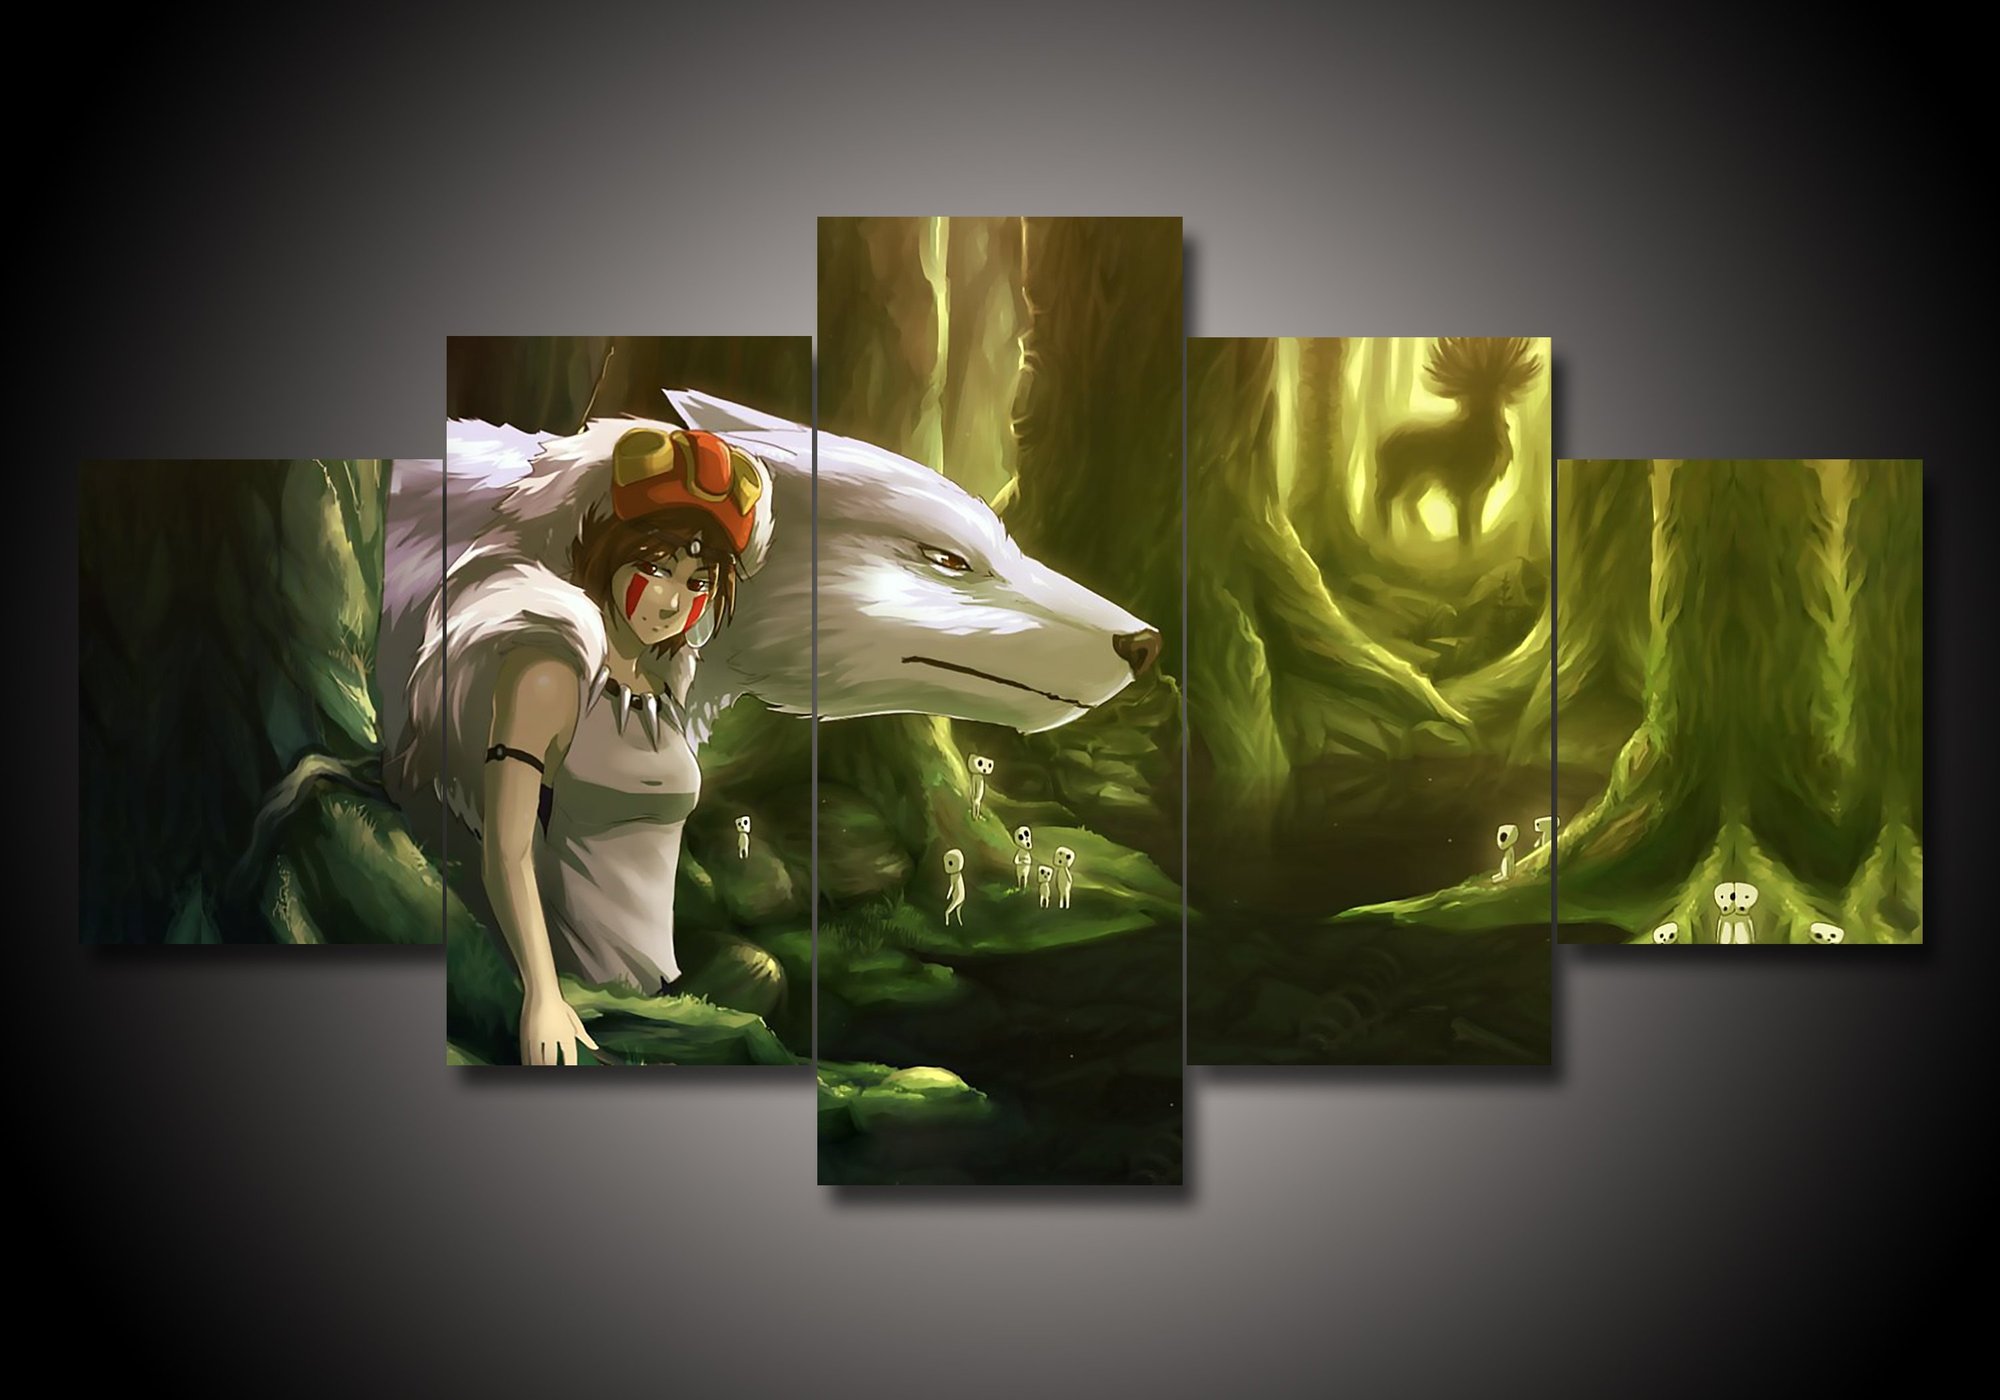 tableau princess mononoke 2 anime 5 pices impression sur toile peinture art pour la dcoration intrieureeasuz